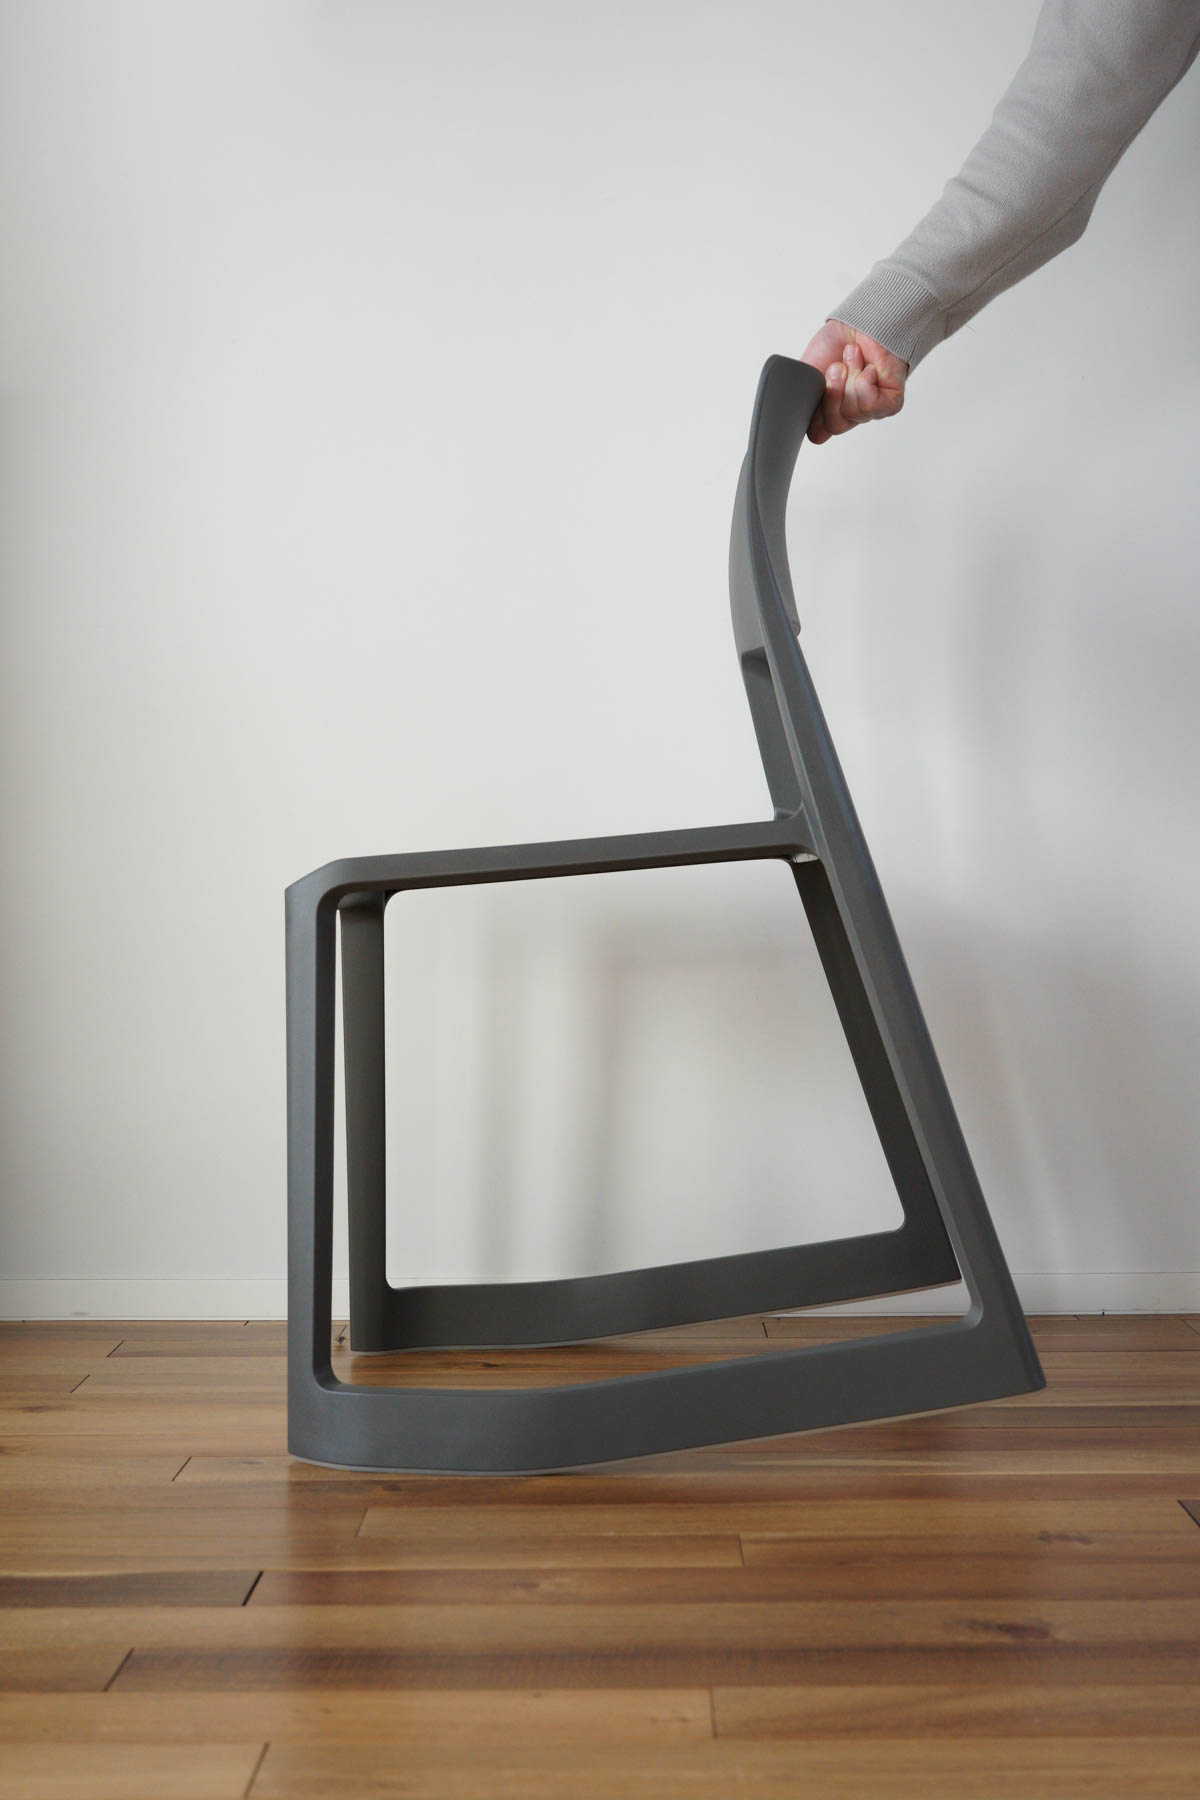 Vitra（ヴィトラ） Tip Ton Chair(ティプトンチェア)の前傾機能